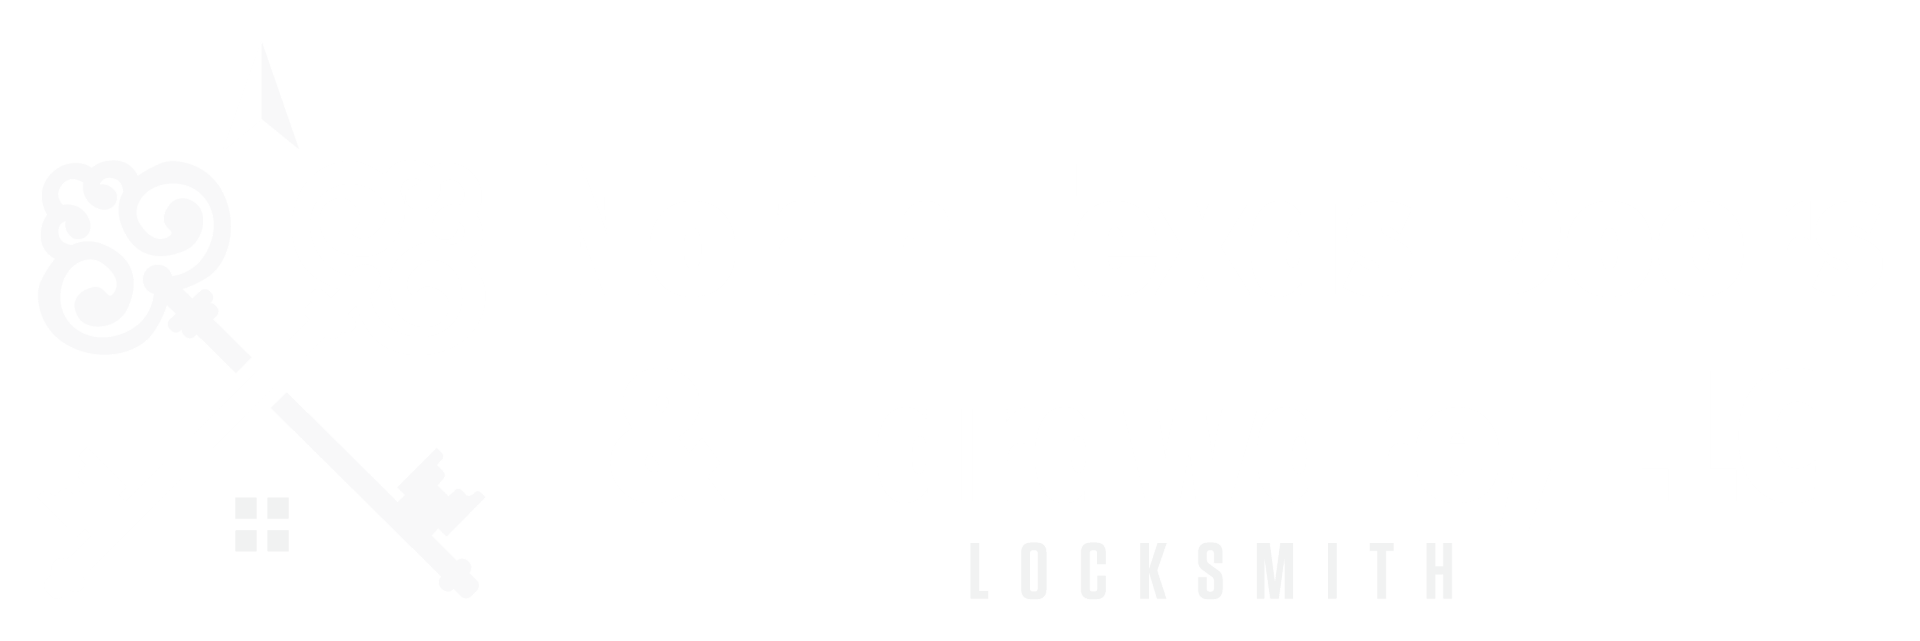 north texas doors & hardware, llc logo